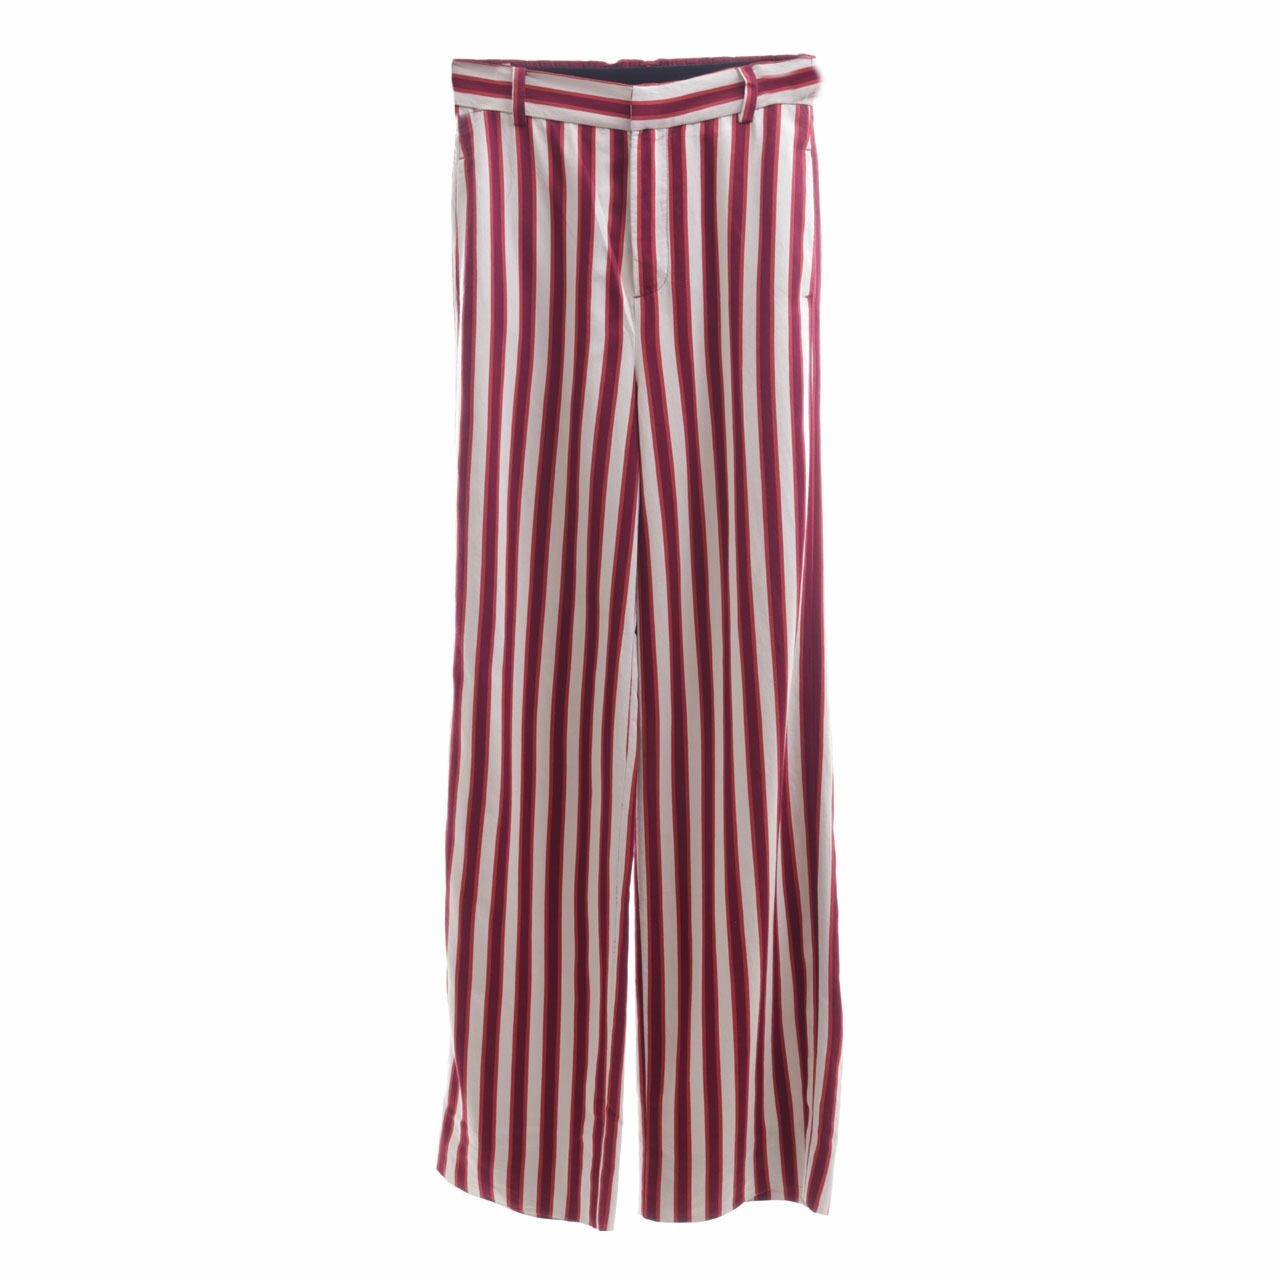 Zara Multicolor Striped Trousers